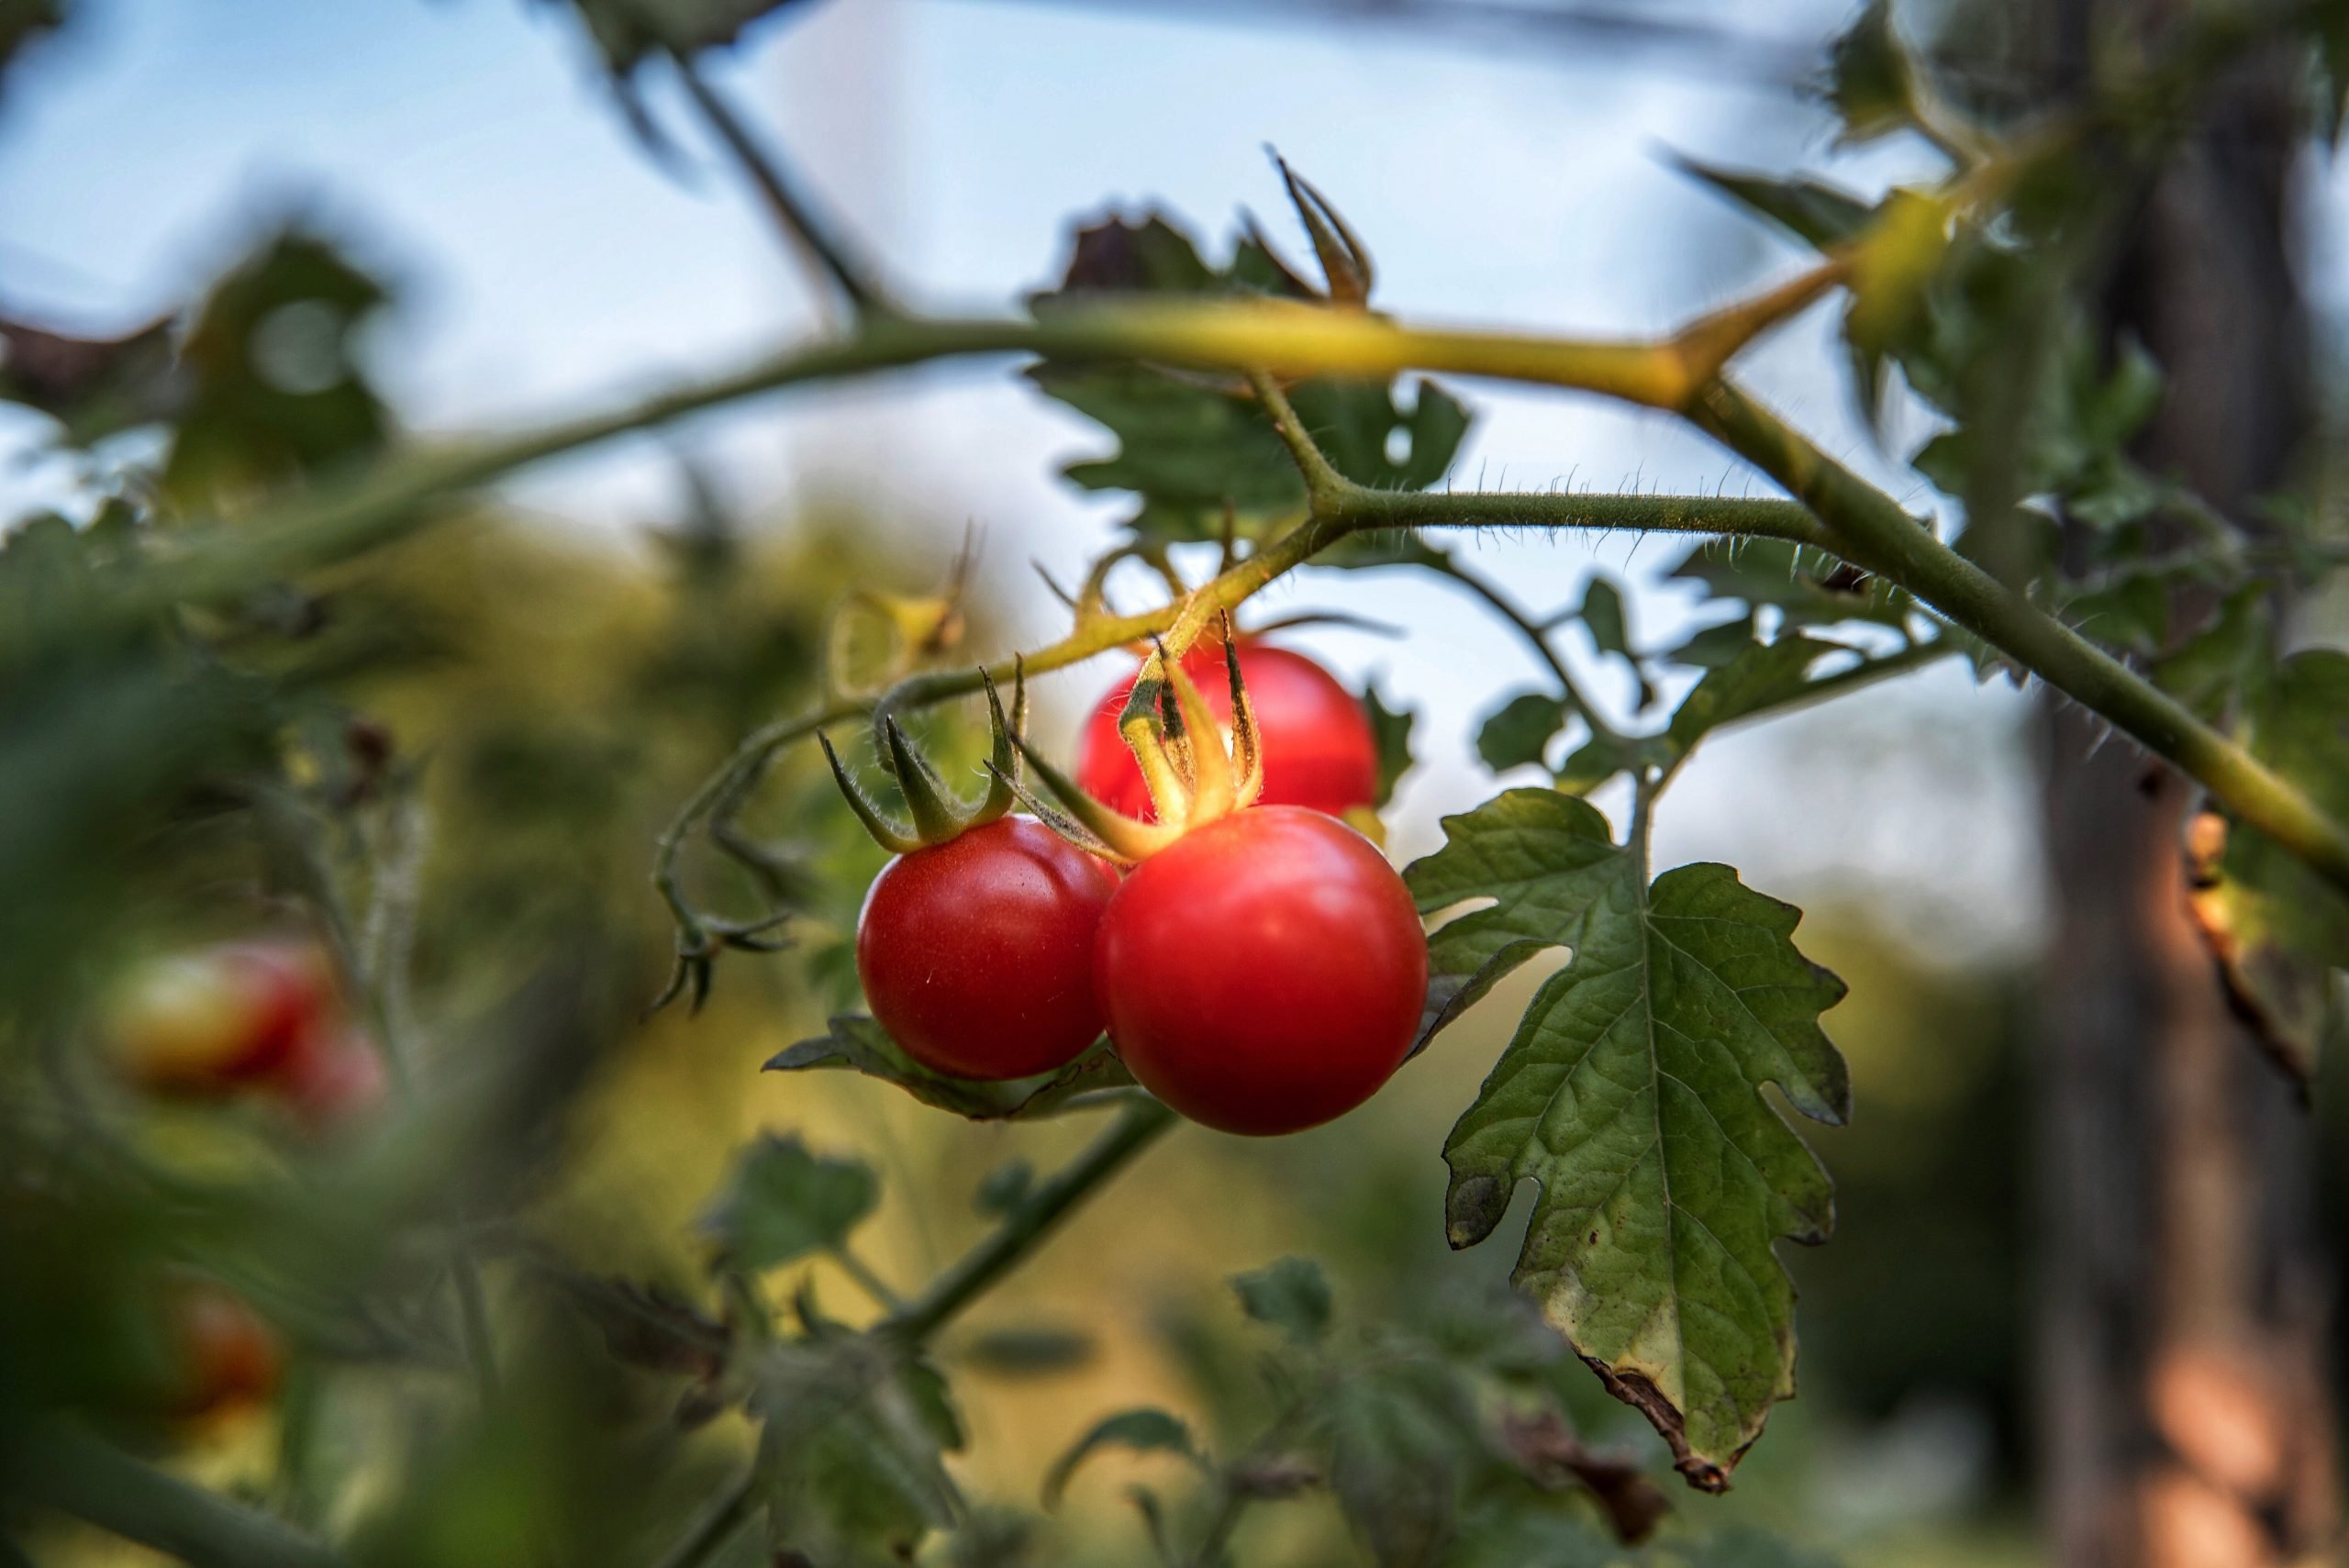 Coldiretti preoccupata dall’invasione di pomodori cinesi: “Scegliete quello a km zero”